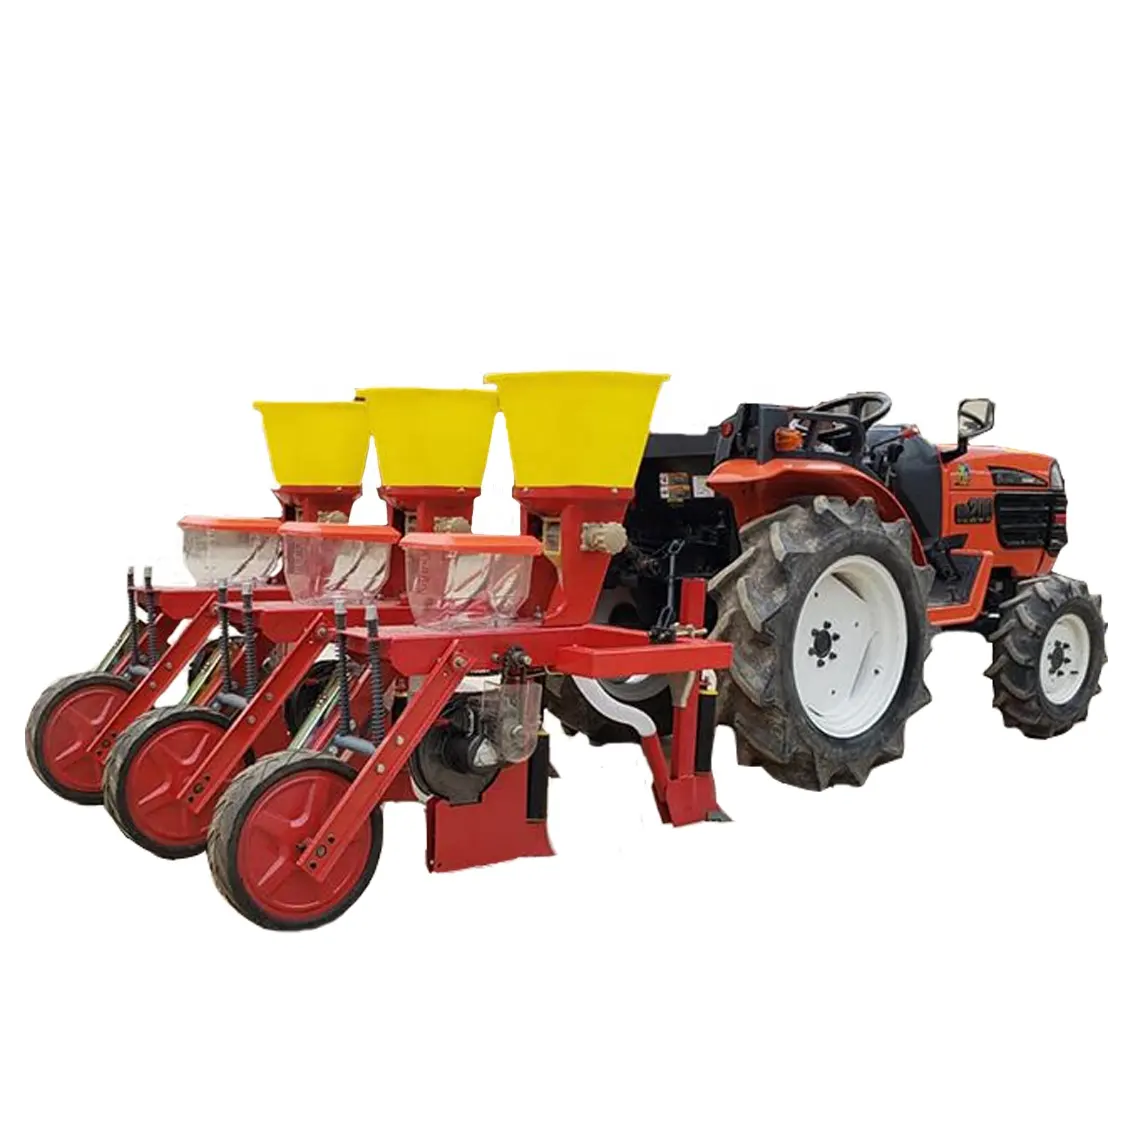 Hassas mısır ekme makinesi traktör monte 2/3/4 satır 2byf-4 hassas tip mısır tohum ekme makinesi sebze ekici 2 satır